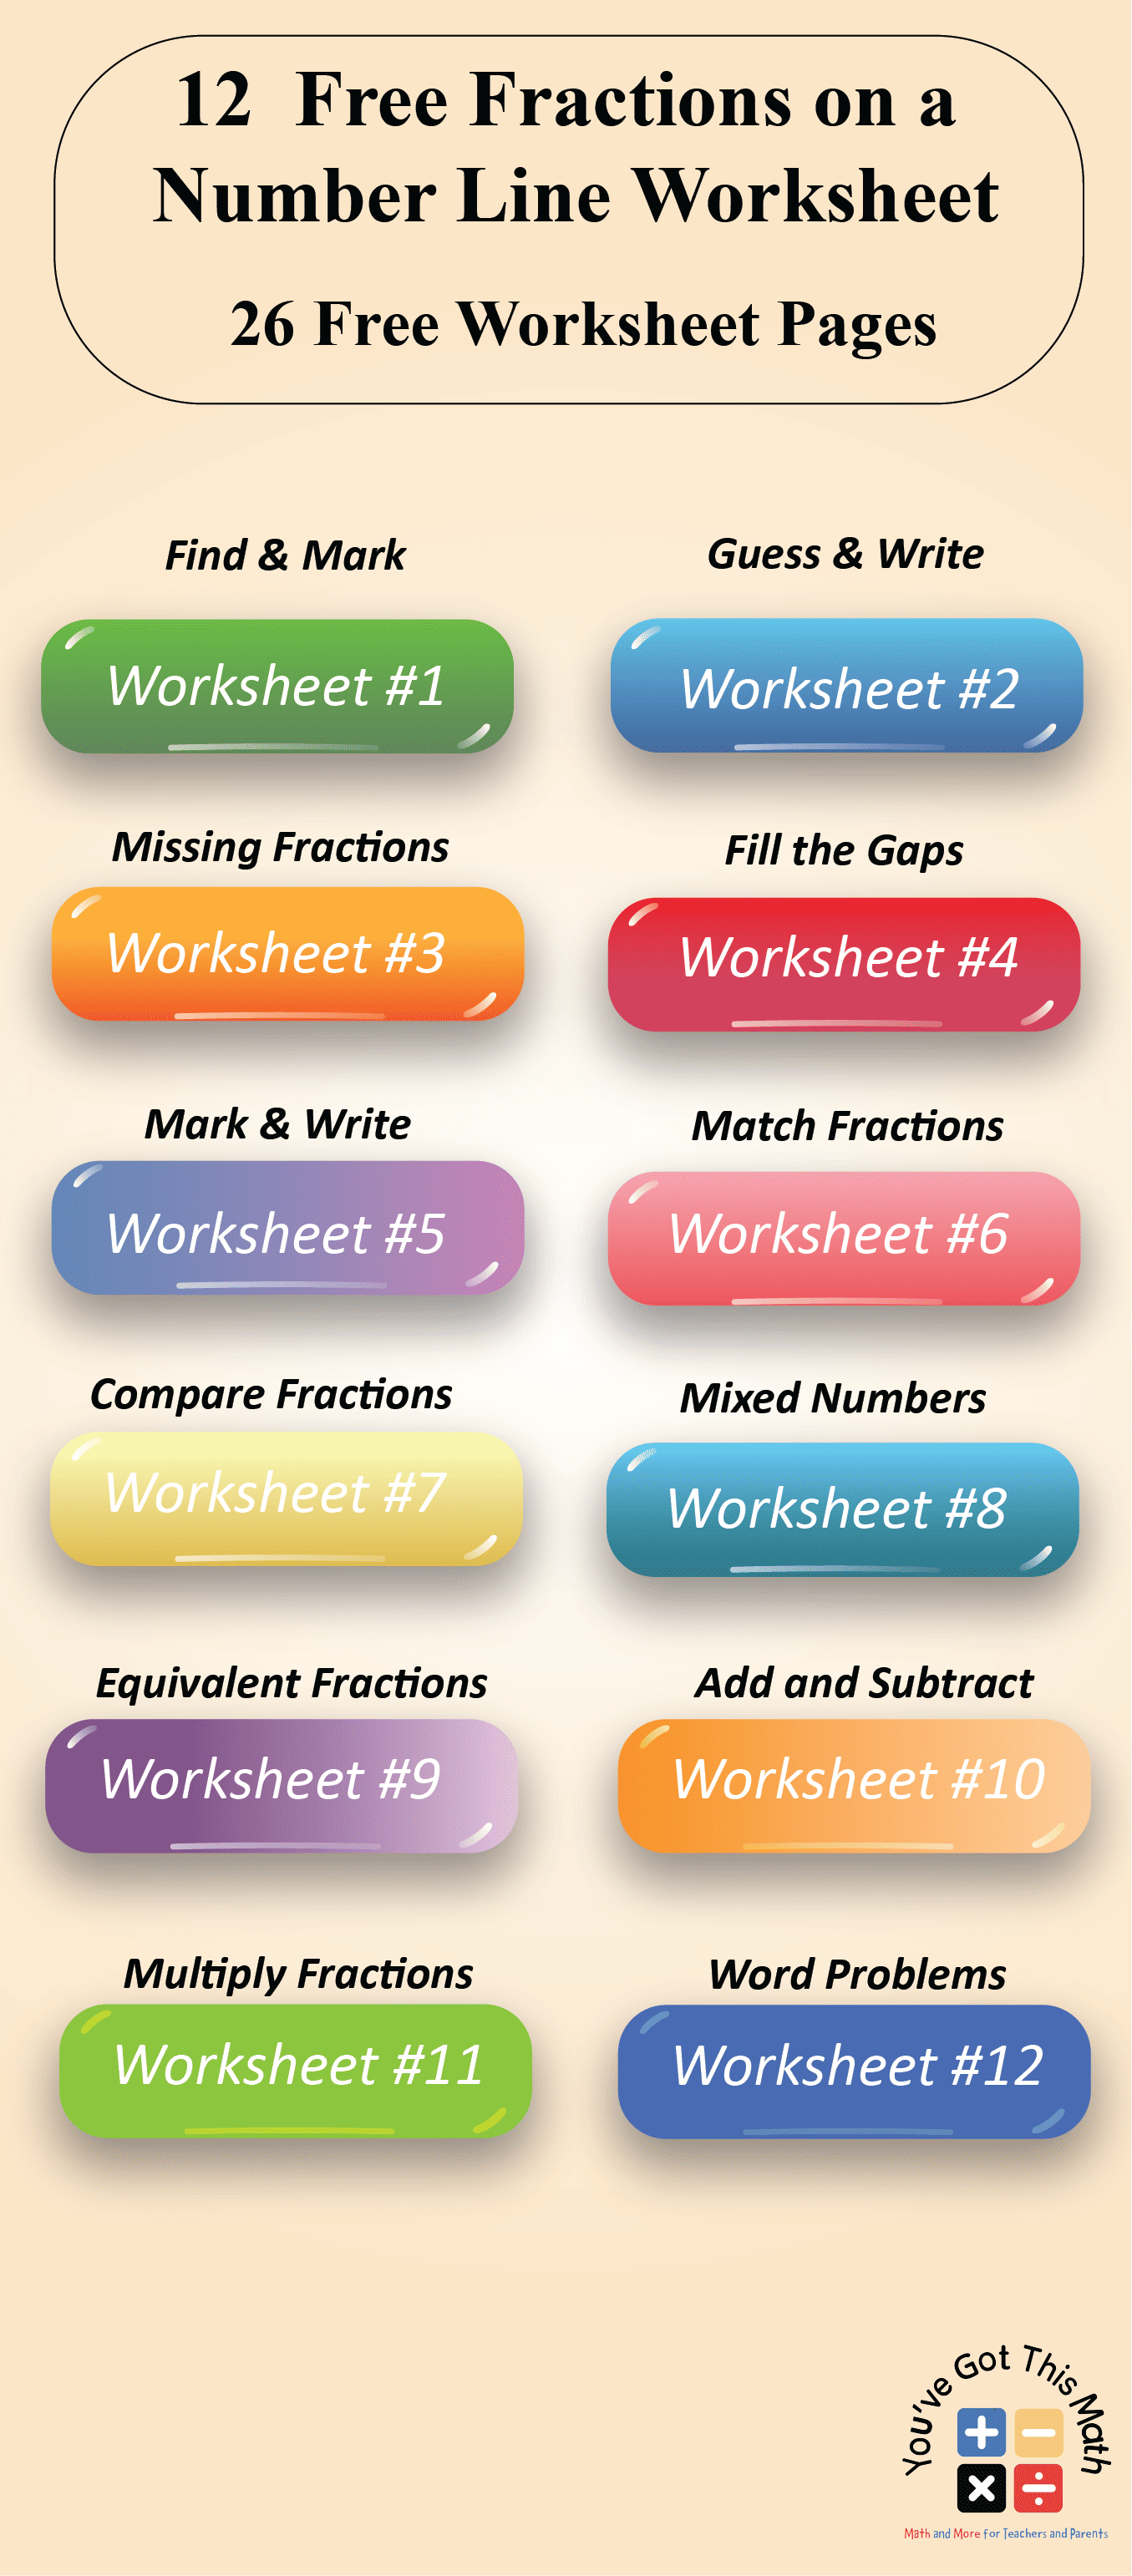 fractions on a number line worksheet PDF box image